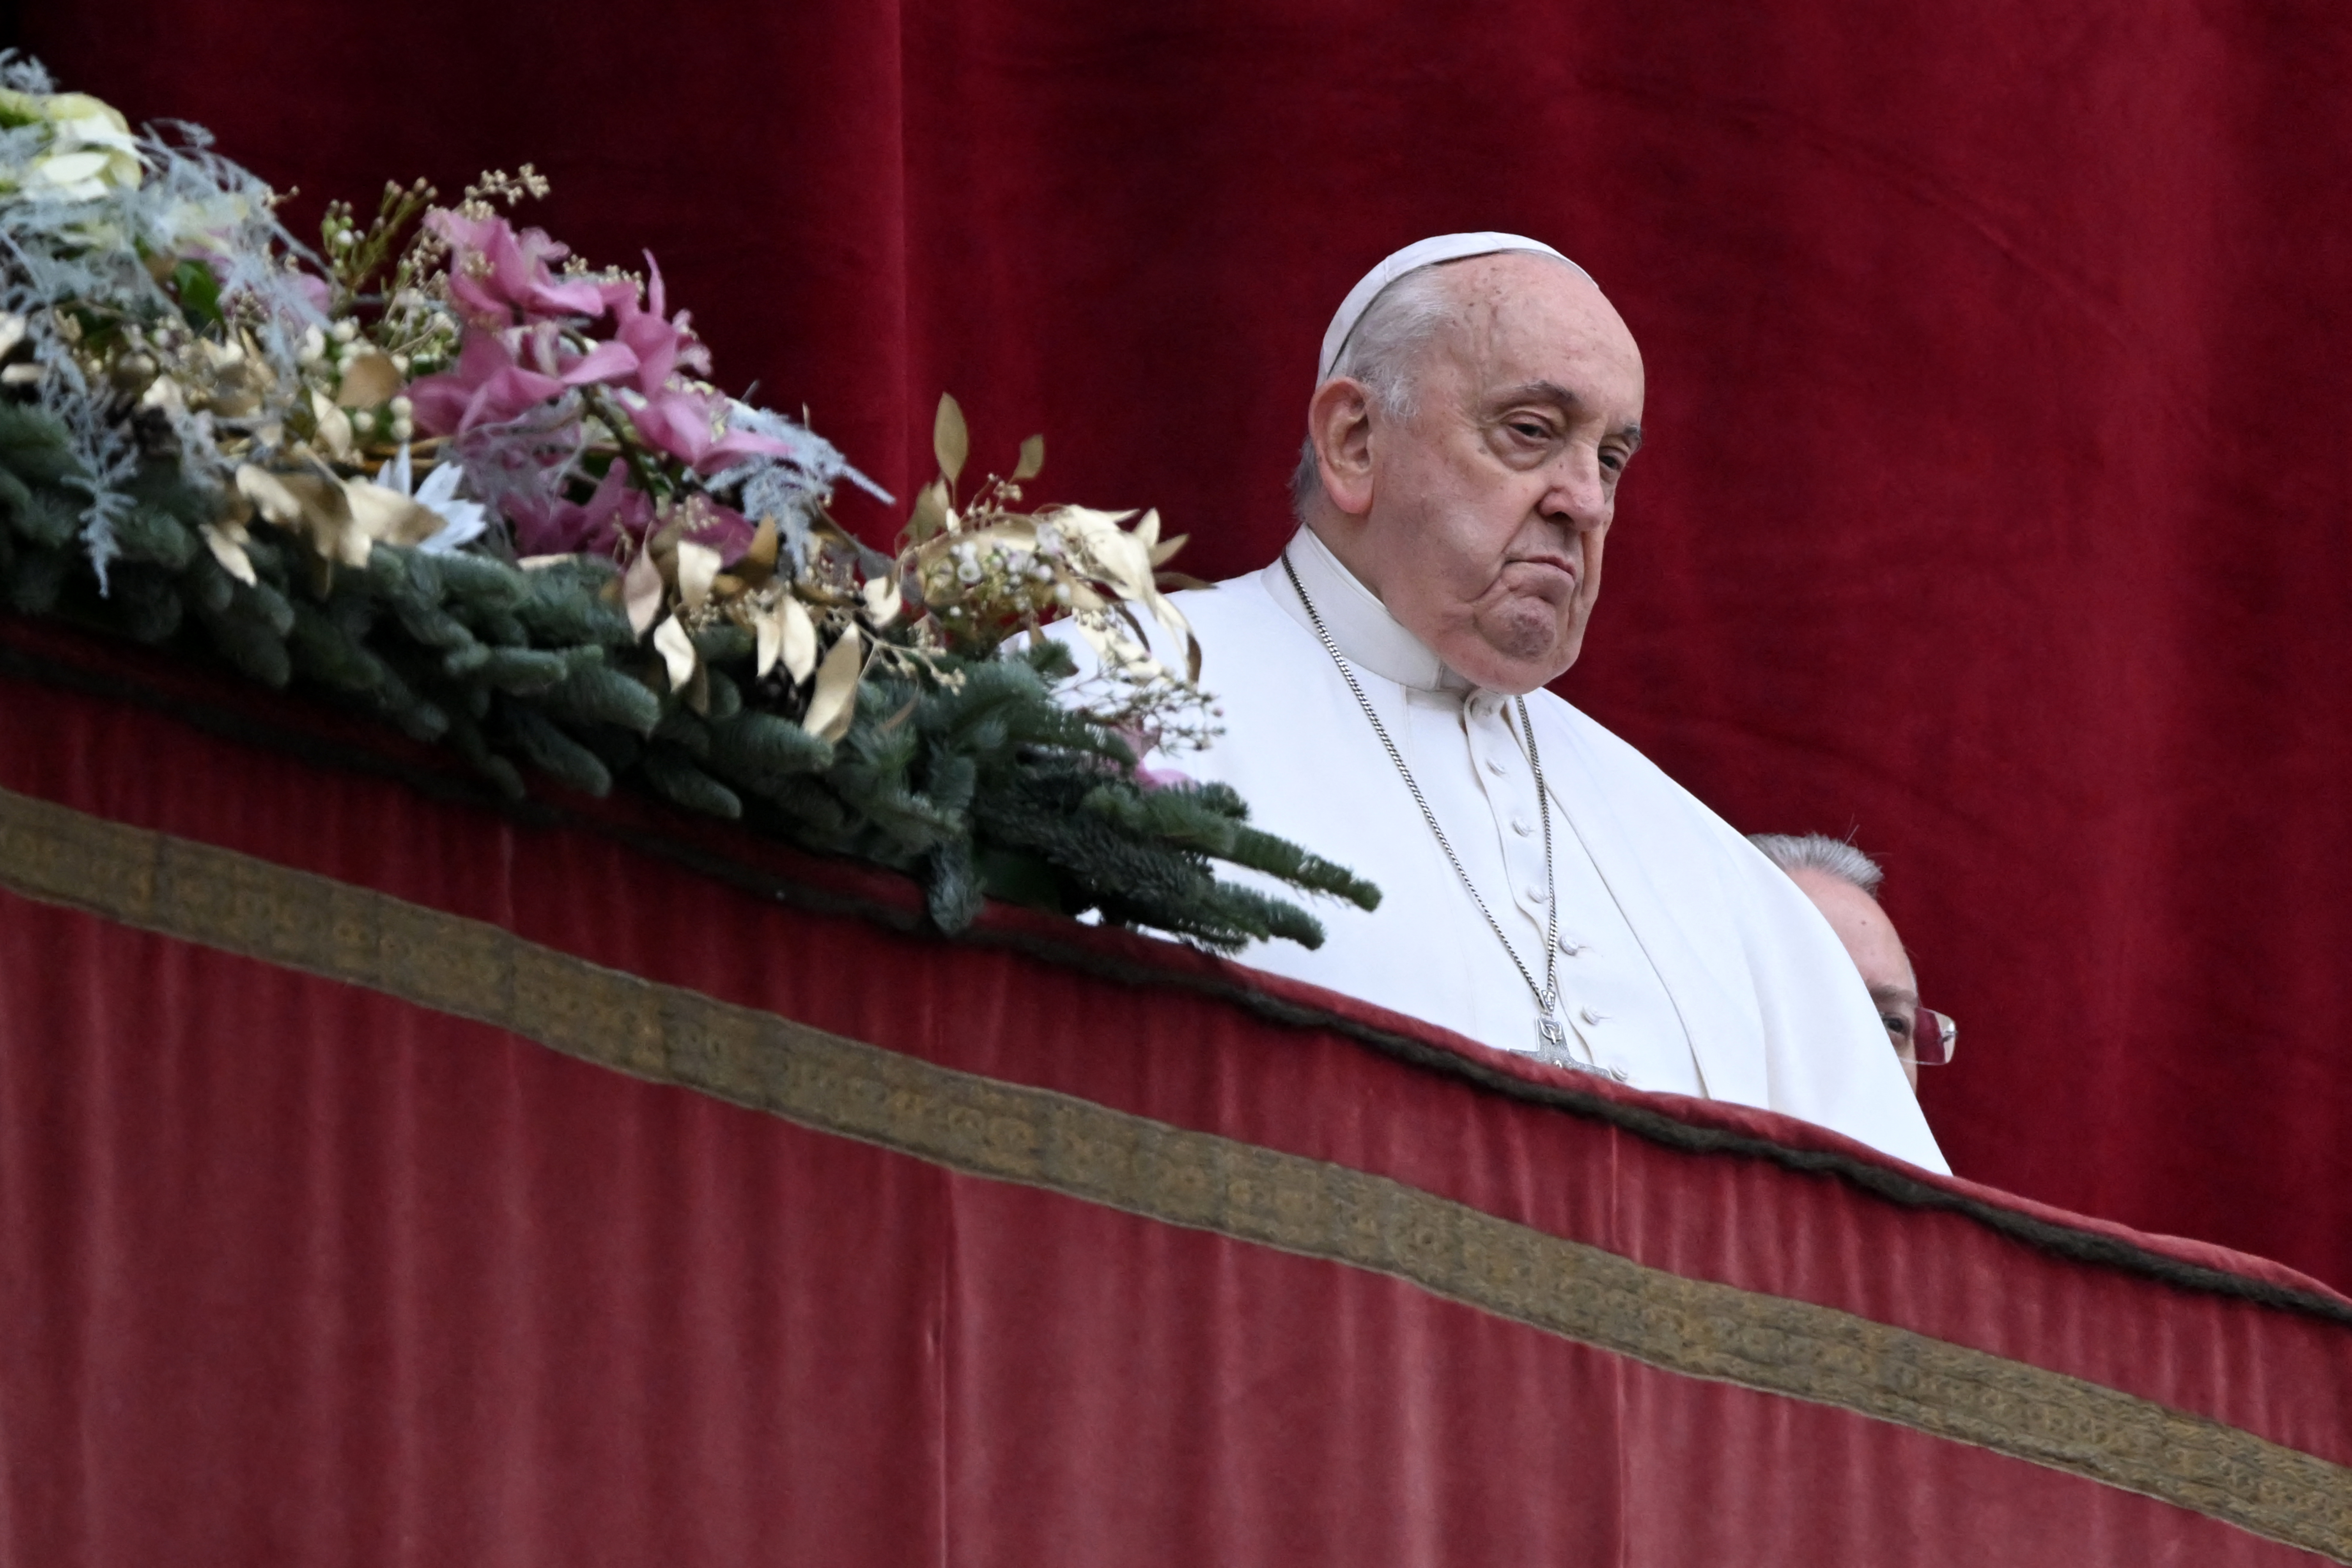 El papa Francisco lamenta que la humanidad “camine en la oscuridad de las desigualdades y conflictos”